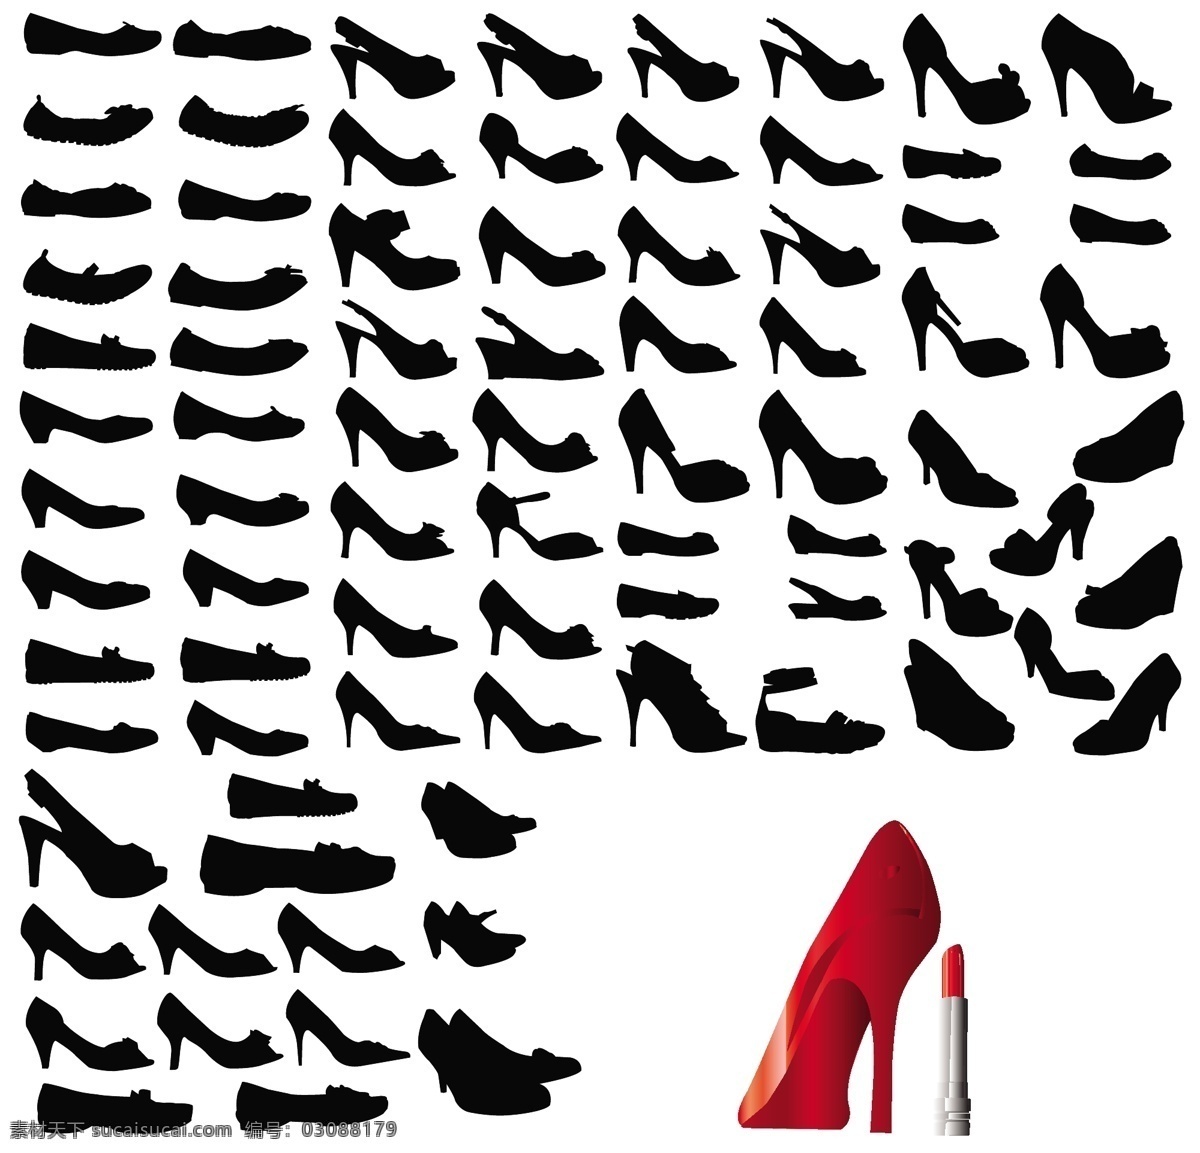 女性 高跟鞋 矢量 唇膏 剪影 口红 女人 矢量素材 小腿 鞋子 矢量图 日常生活